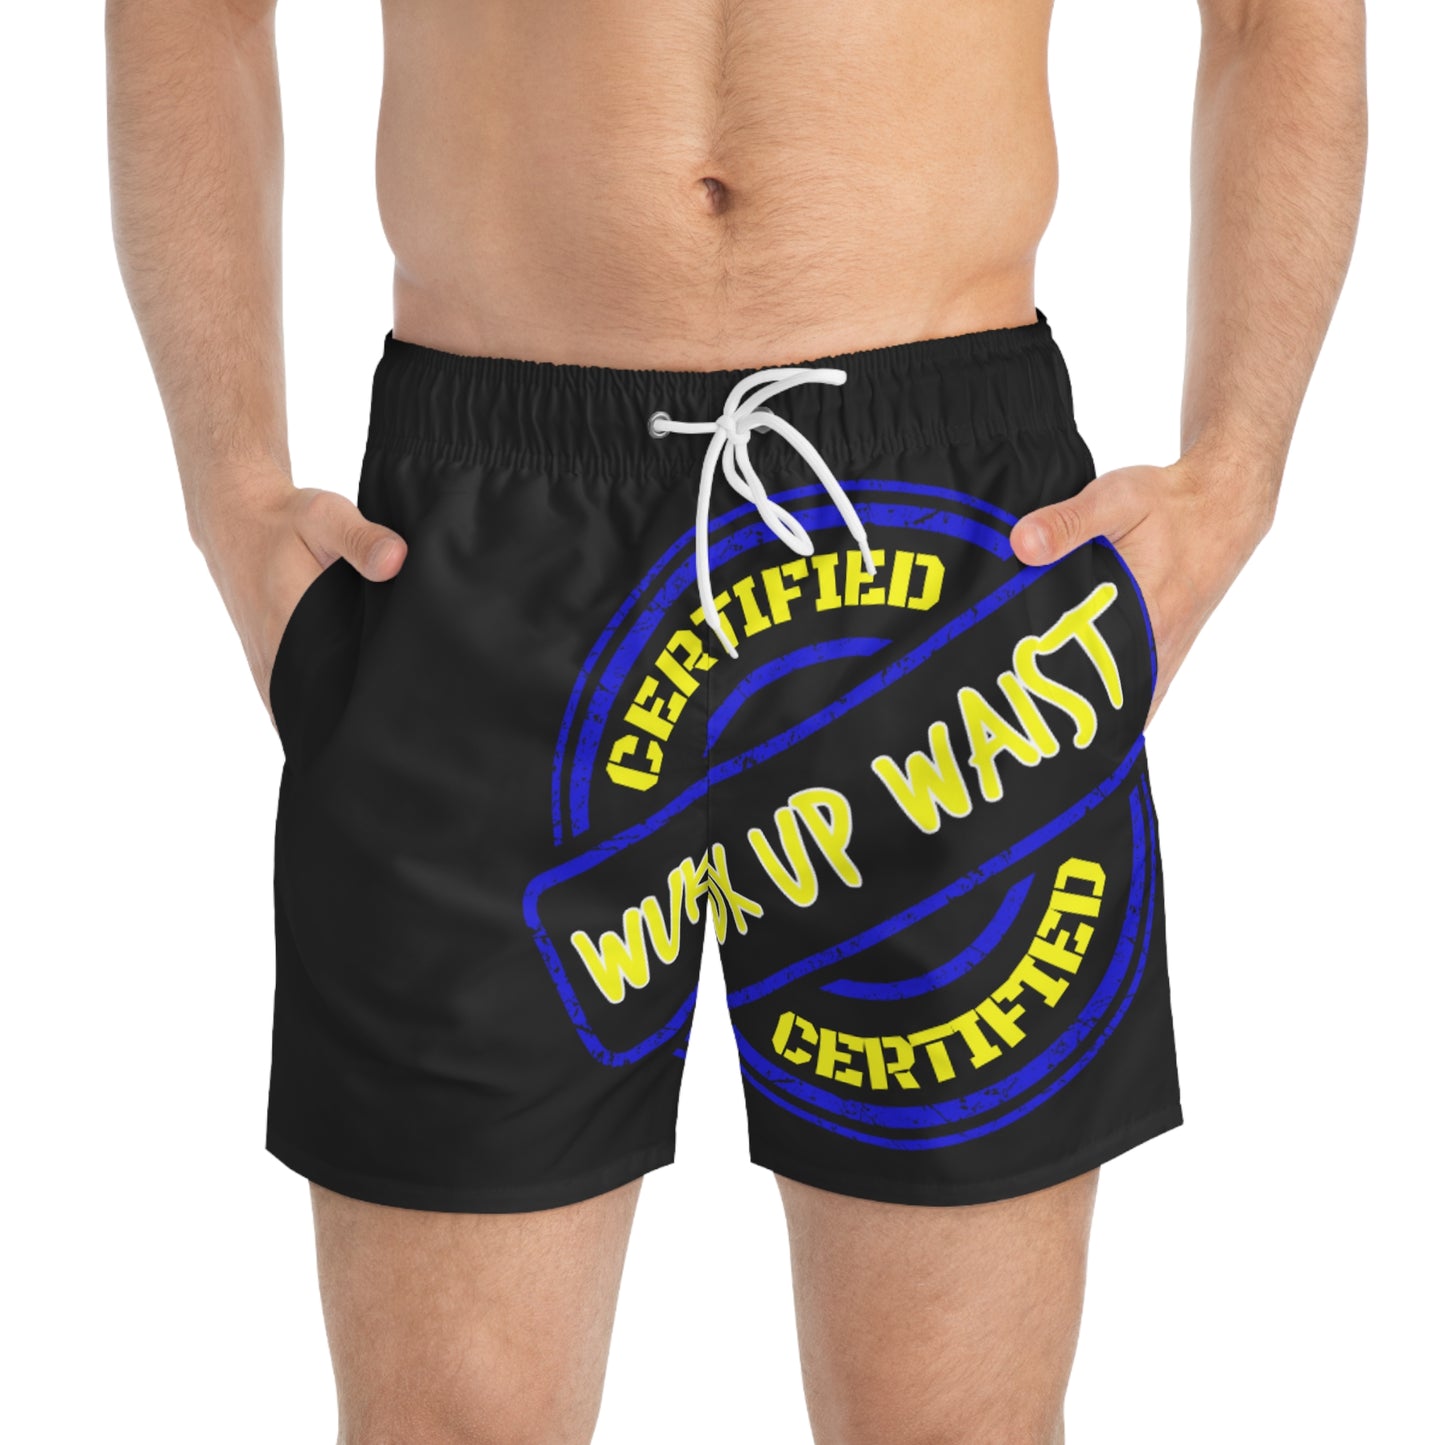 Keevo Certified  - Wuk Up Waist -  Men's Fete Shorts (black)